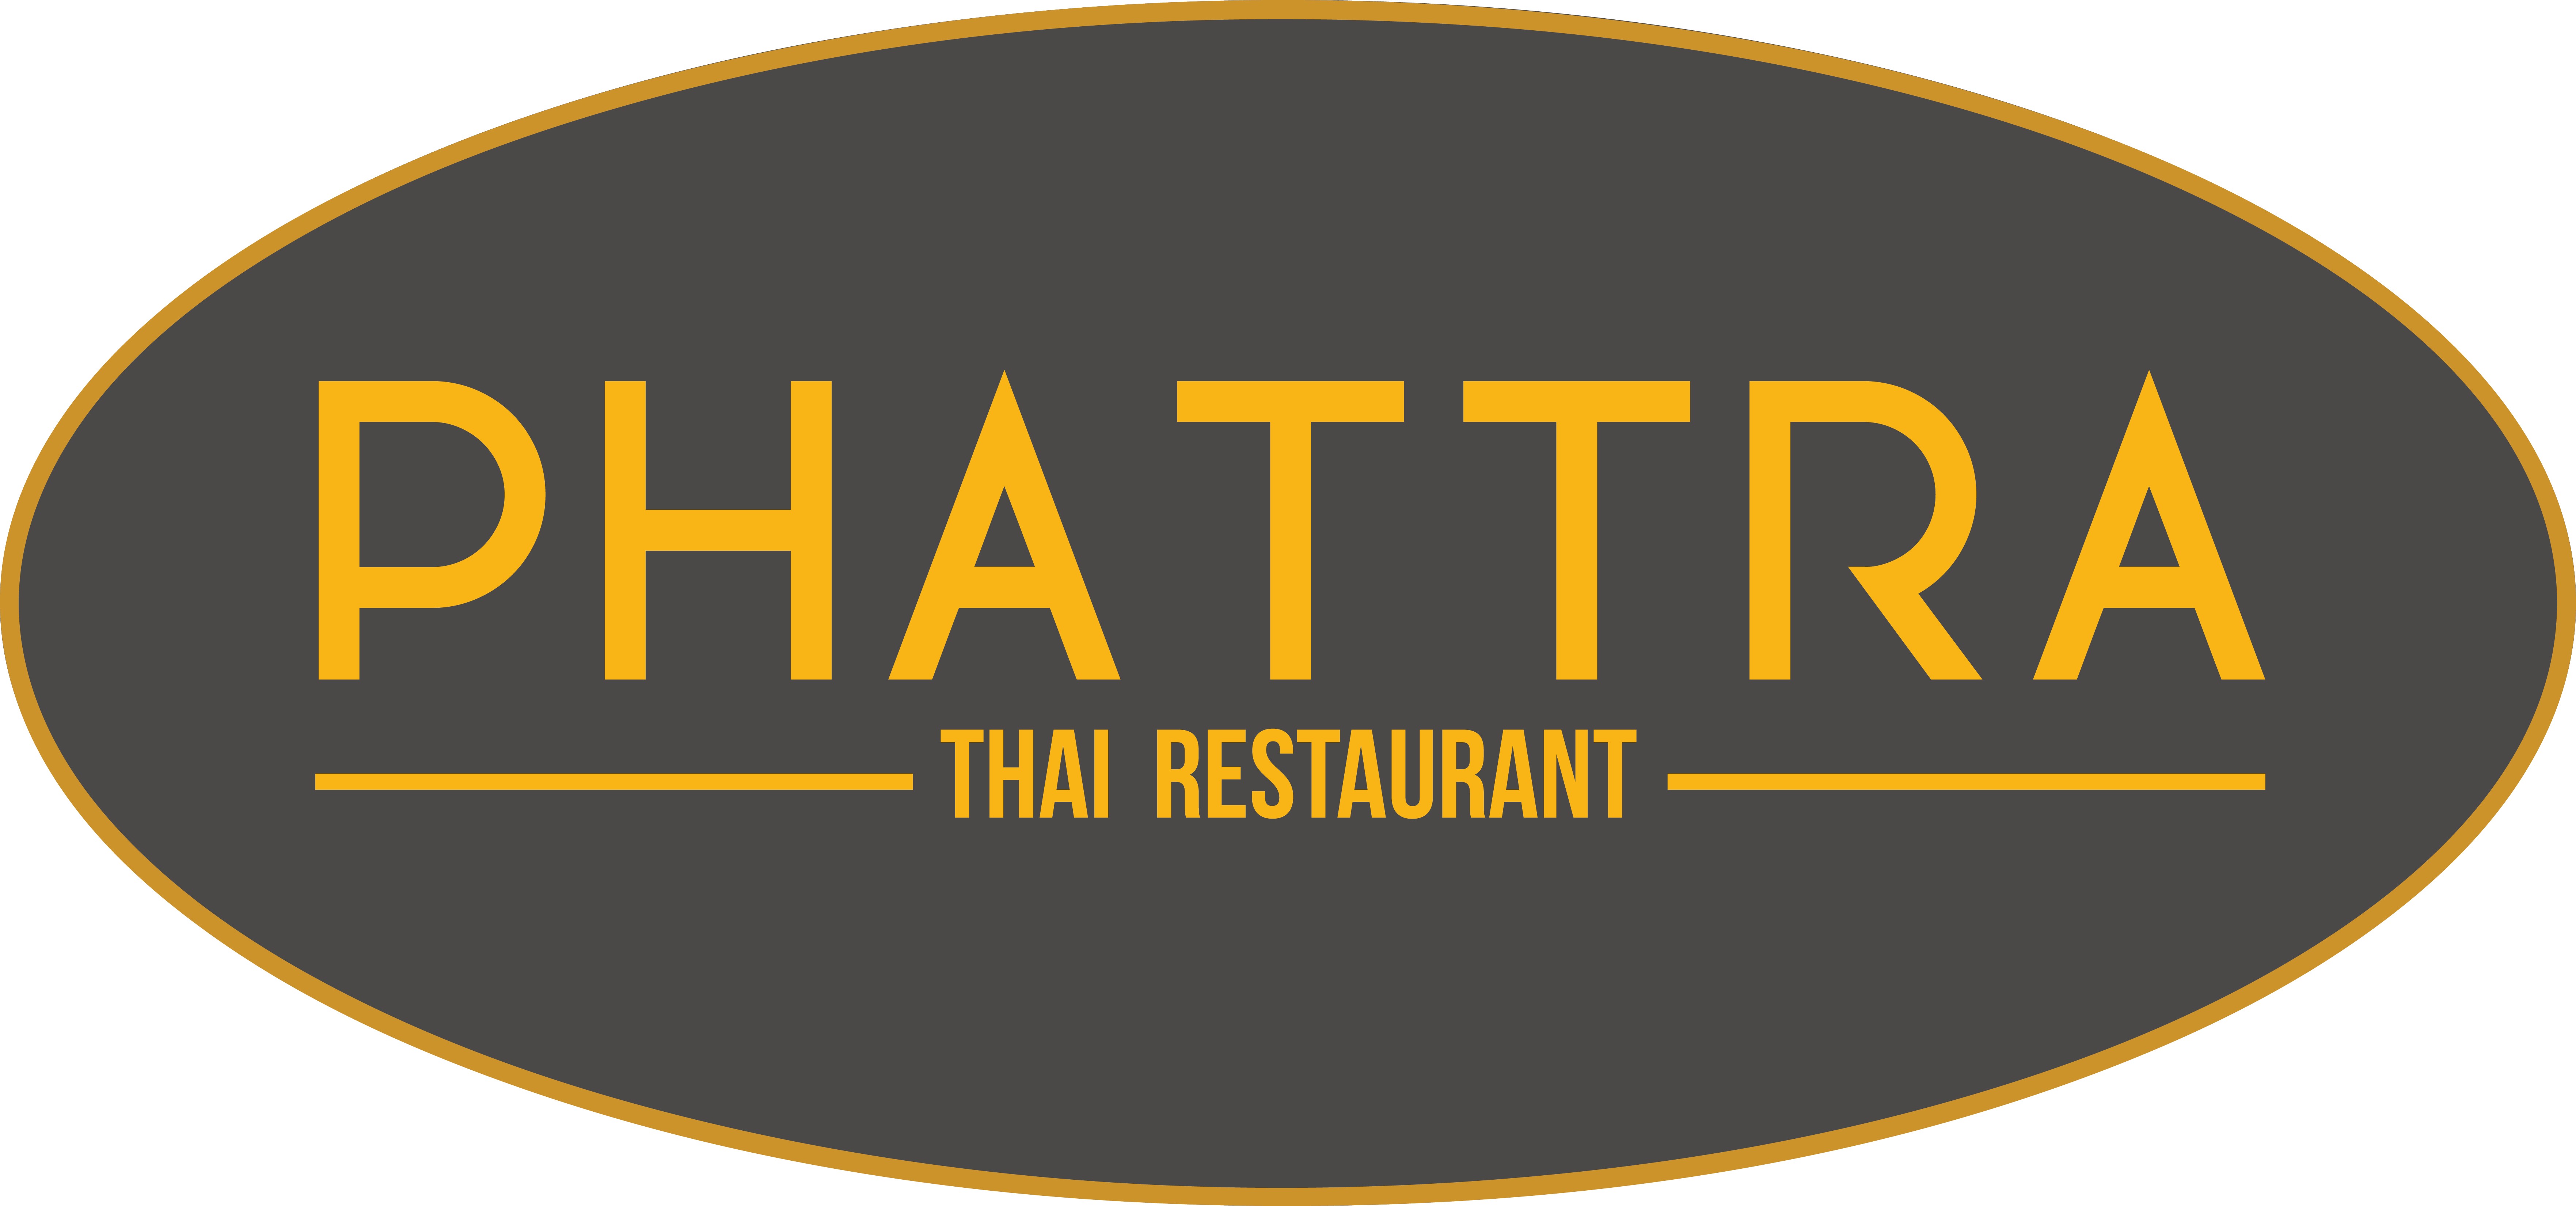 Phattra Thai Restaurant